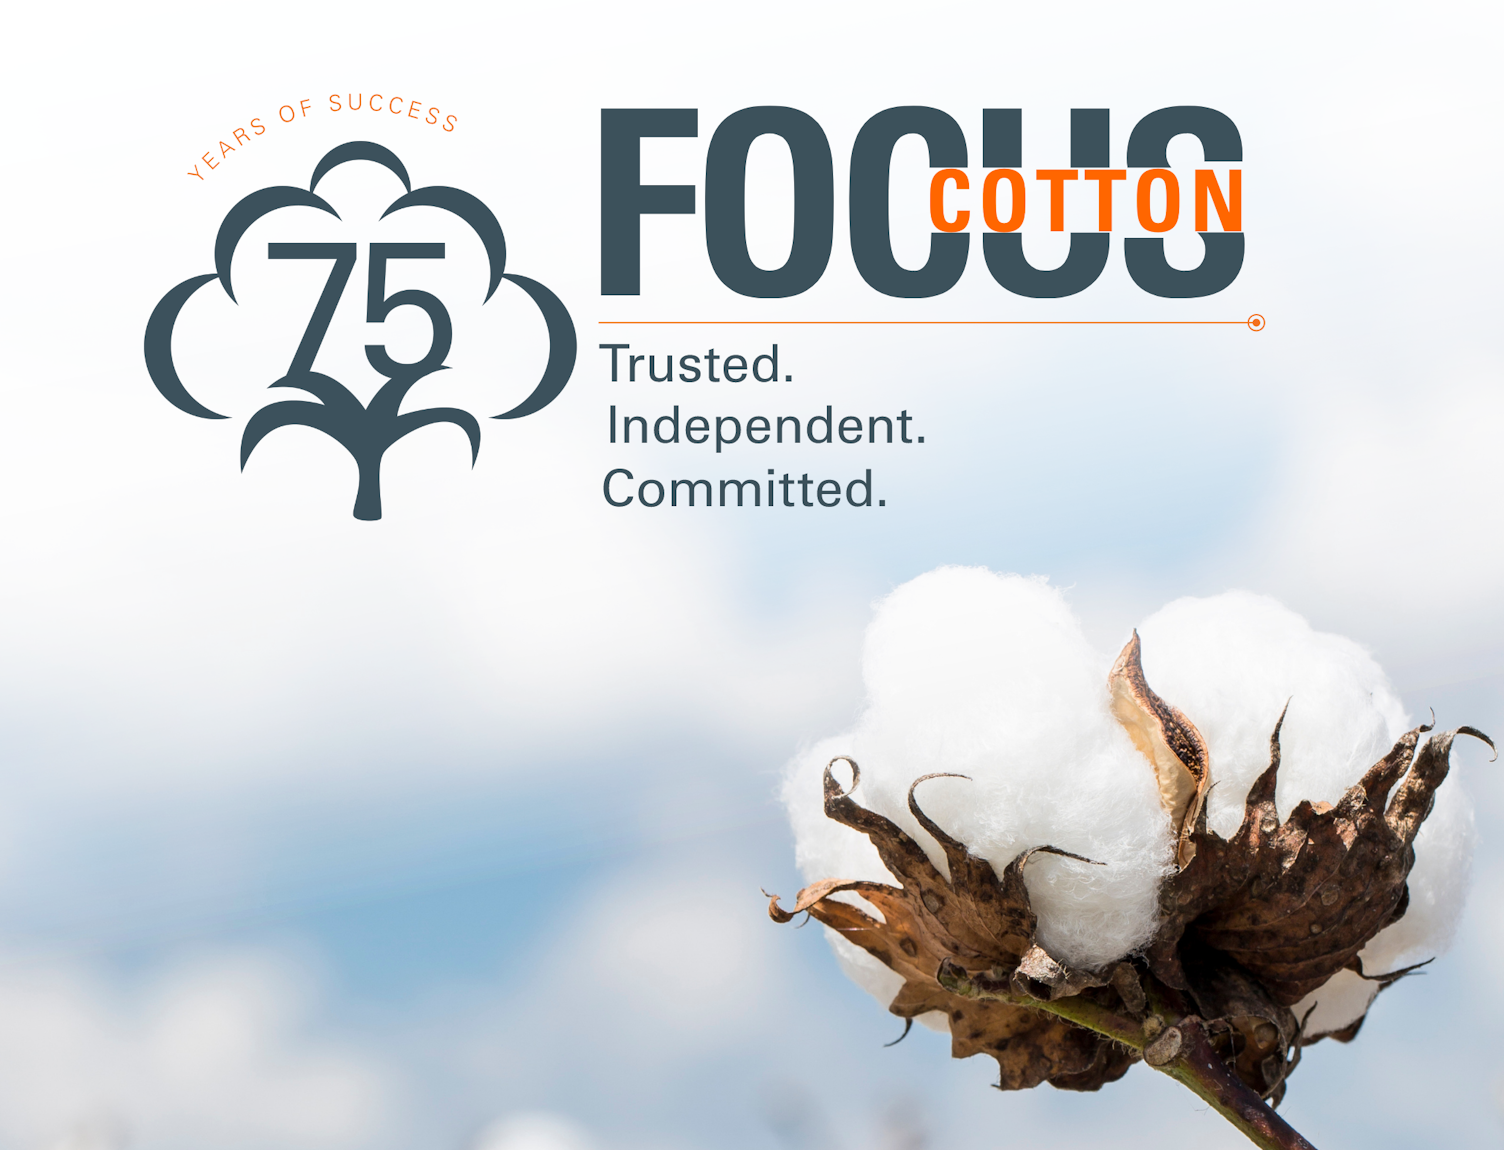 Focus on Cotton 2022